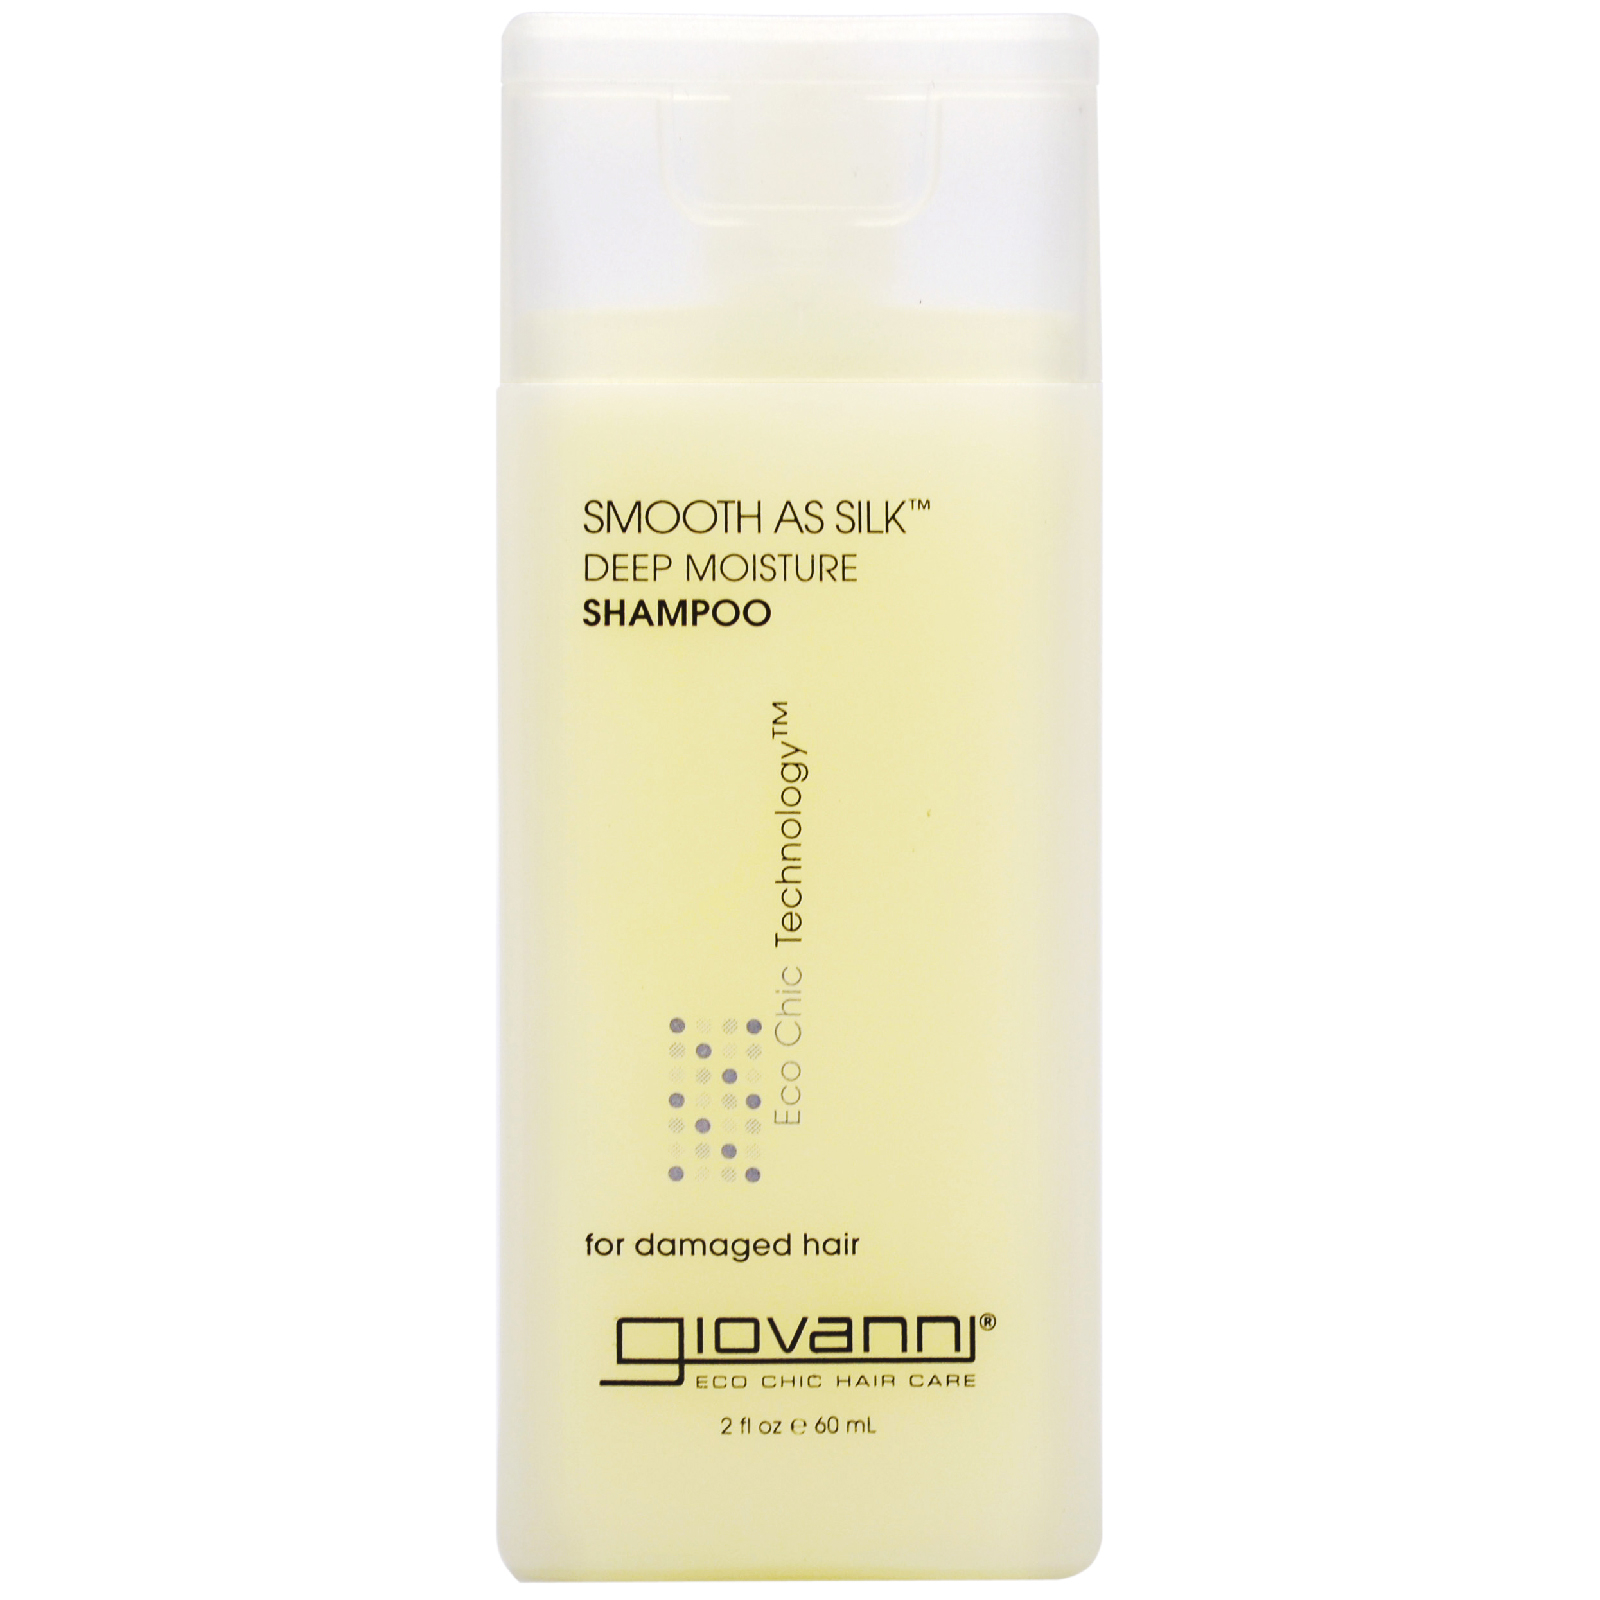 Photos - Hair Product Giovanni Smooth as Silk Shampoo 60ml 4507 